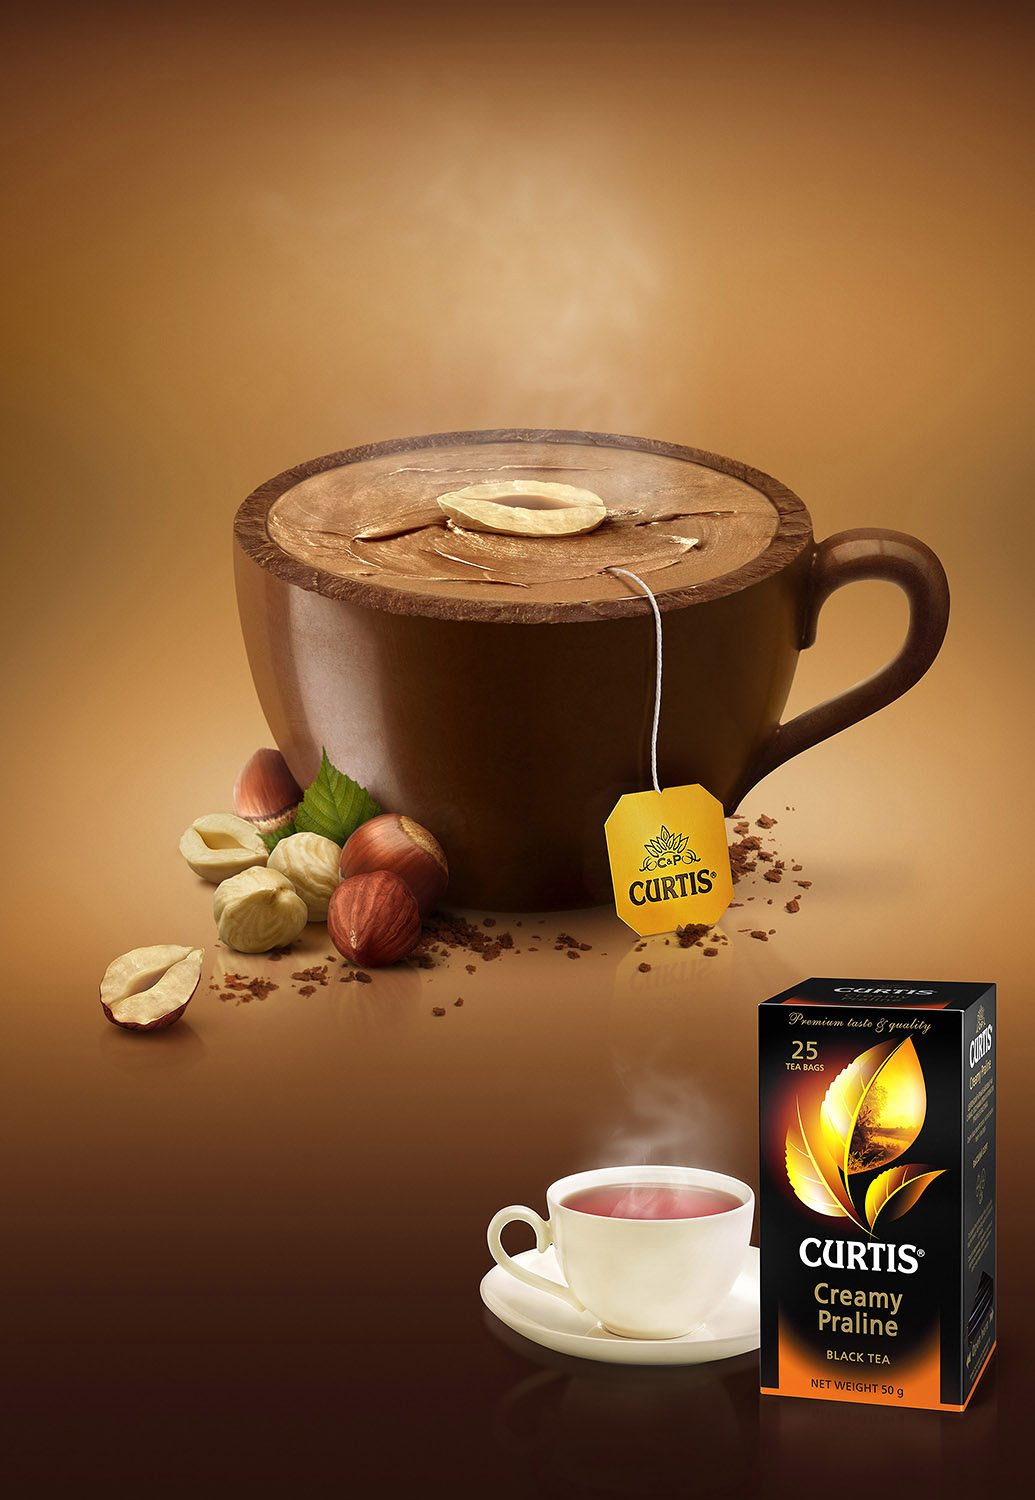 Curtis чай шоколад реклама